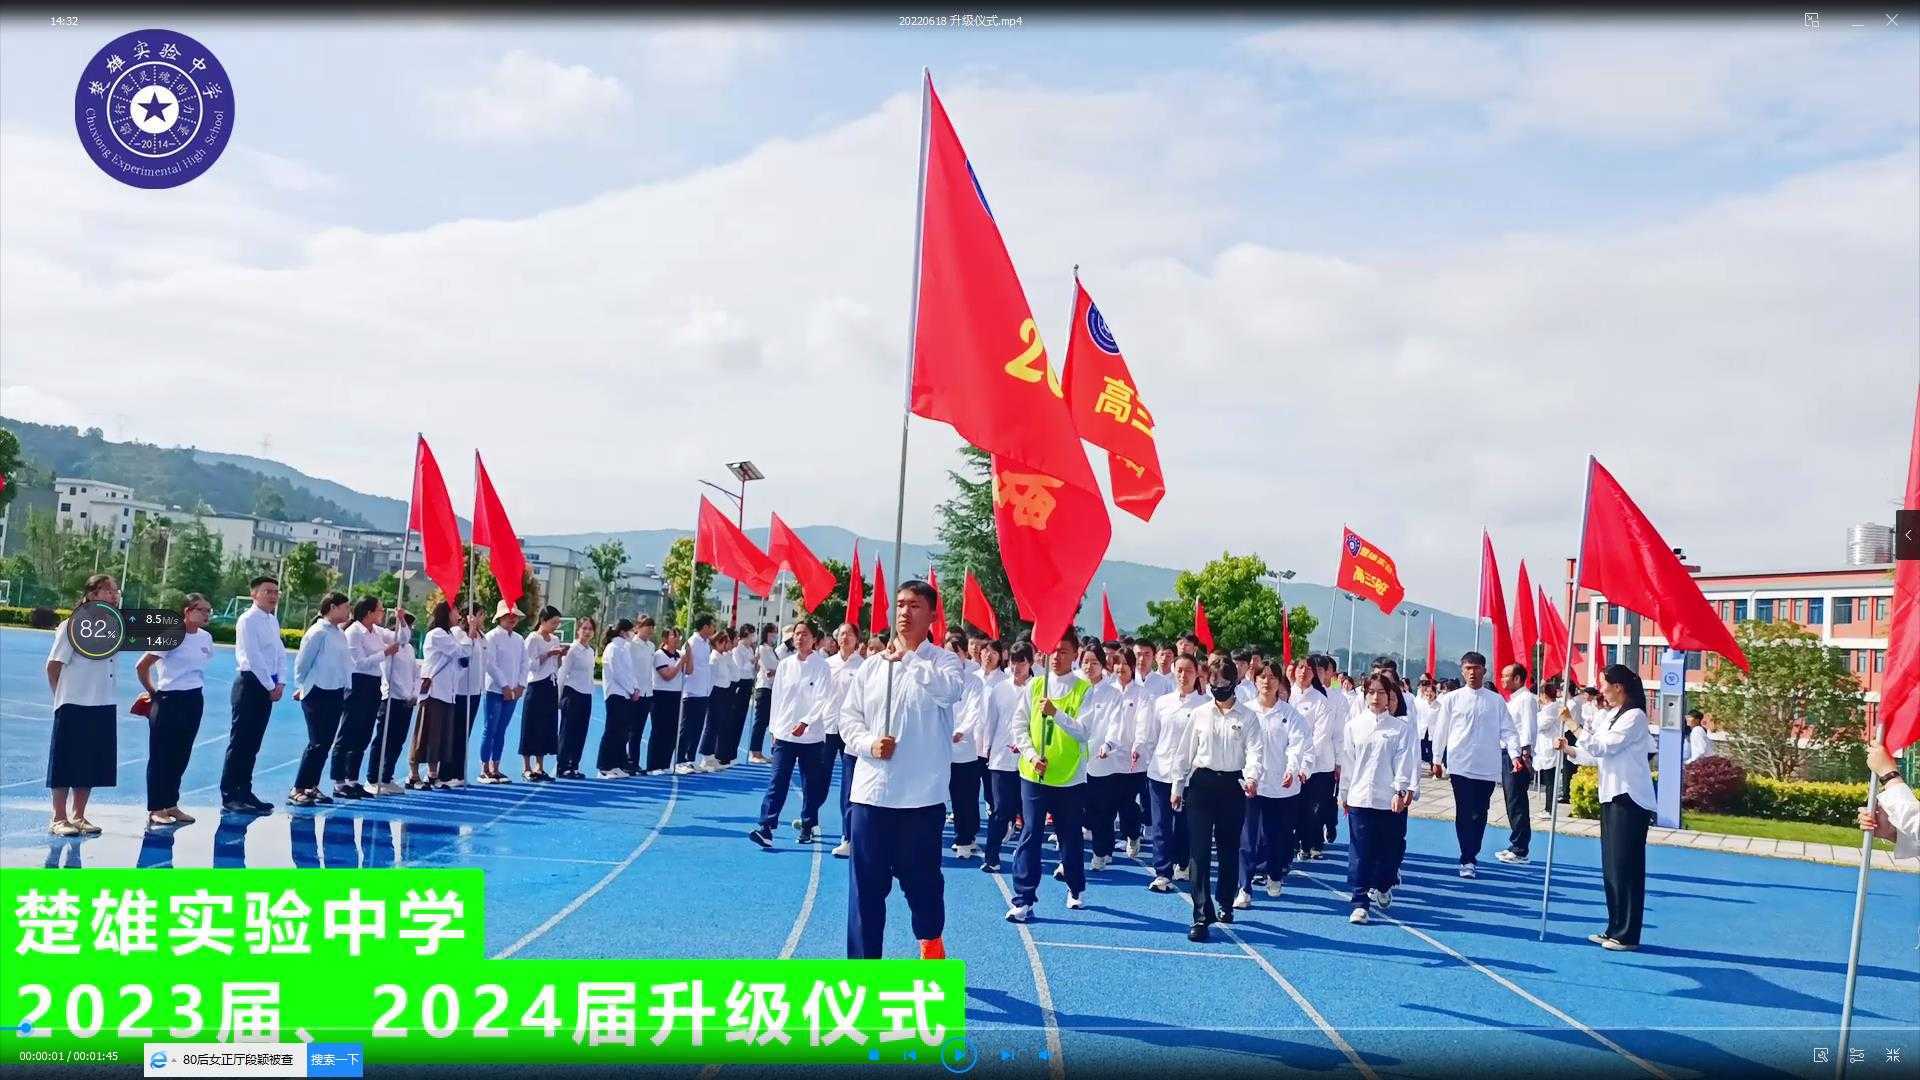 楚雄实验中学2023、2024届升级仪式